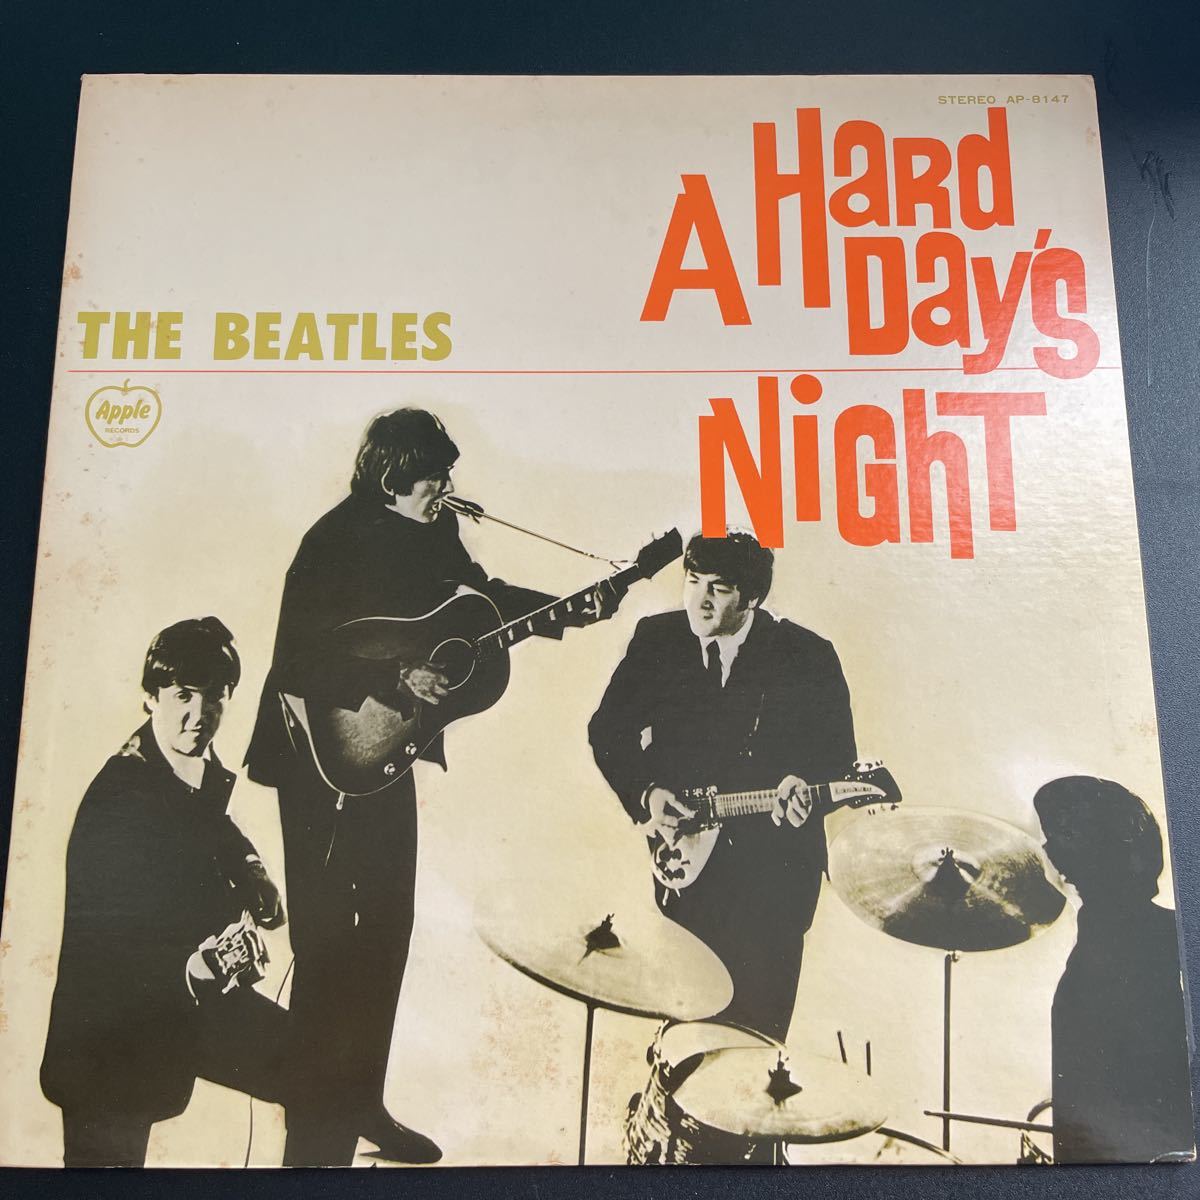 The Beatles A Hard Day's Night(ビートルズがやって来るヤァ!ヤァ!ヤァ!) Apple Records AP-8147 映画パンフレット付_画像1